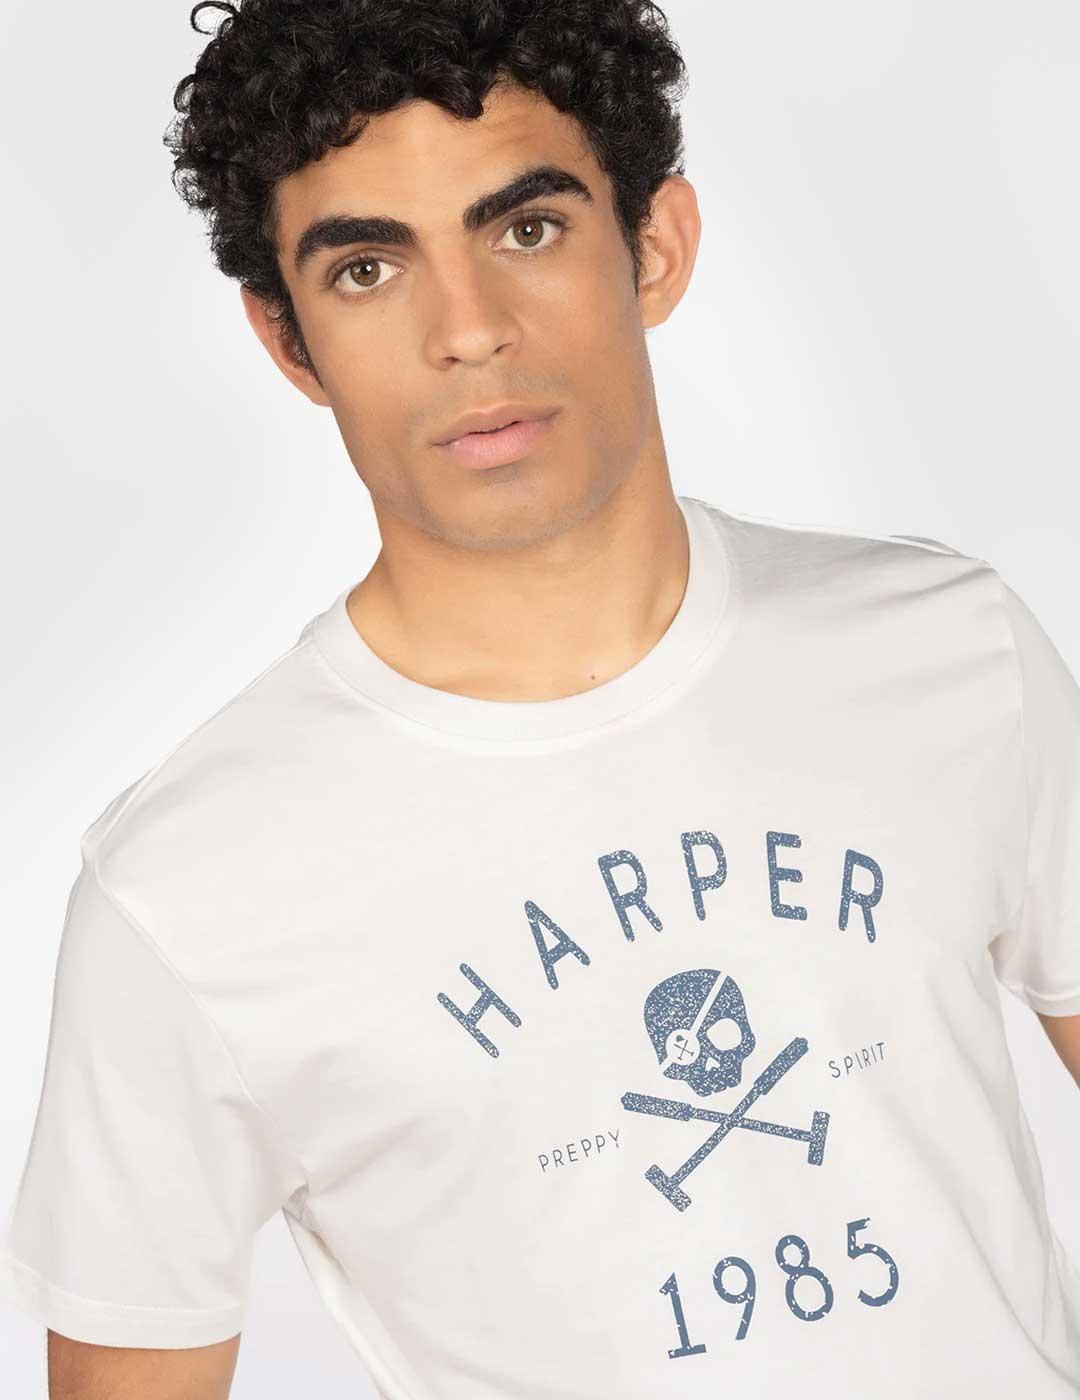 Harper & Neyer Camiseta Skull blanca para hombre